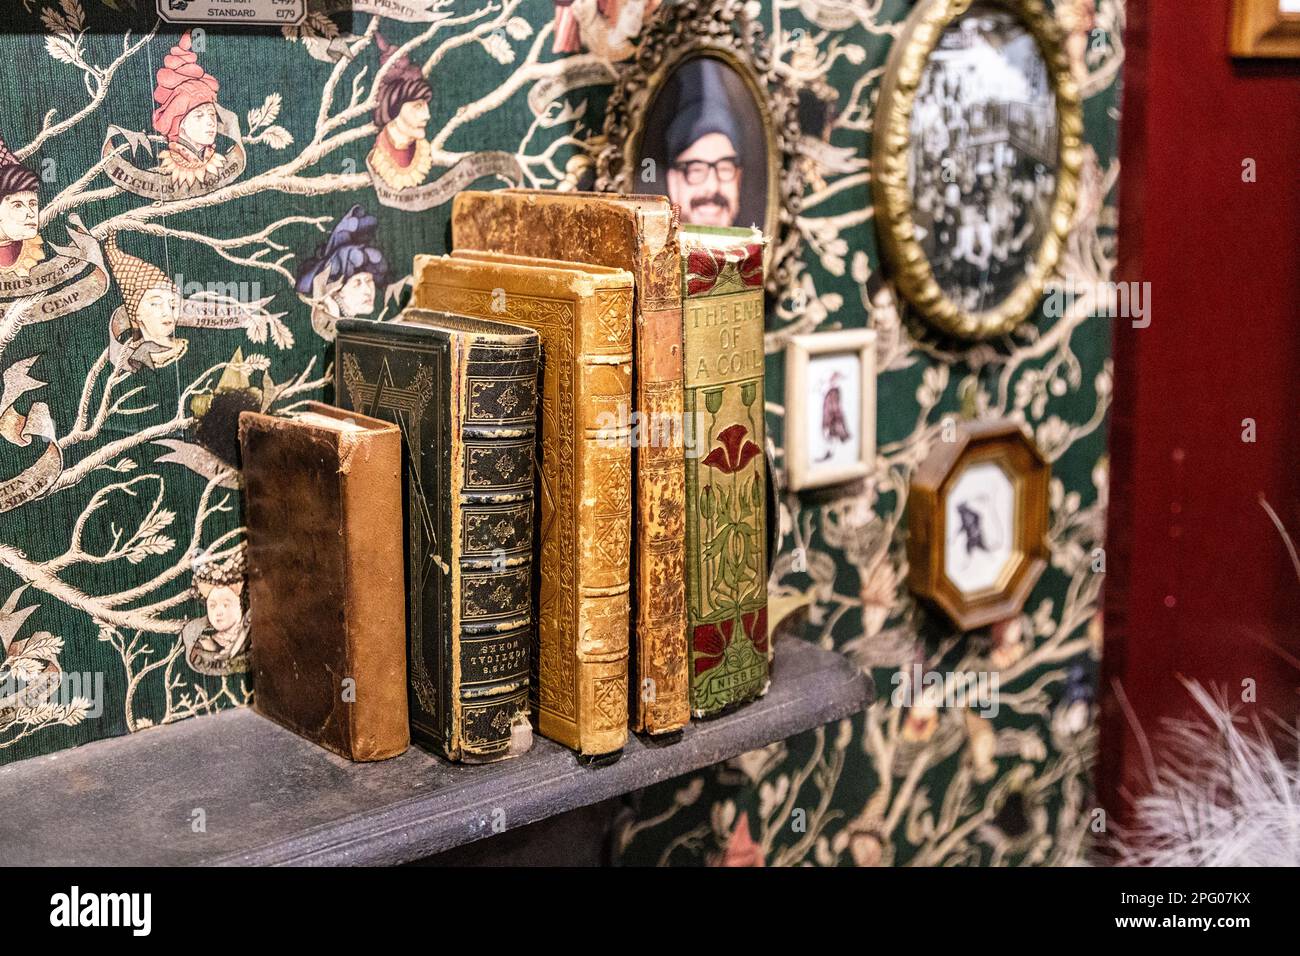 Interno della Casa di MinaLima, un negozio a tema Harry Potter, Soho, Londra, Regno Unito Foto Stock